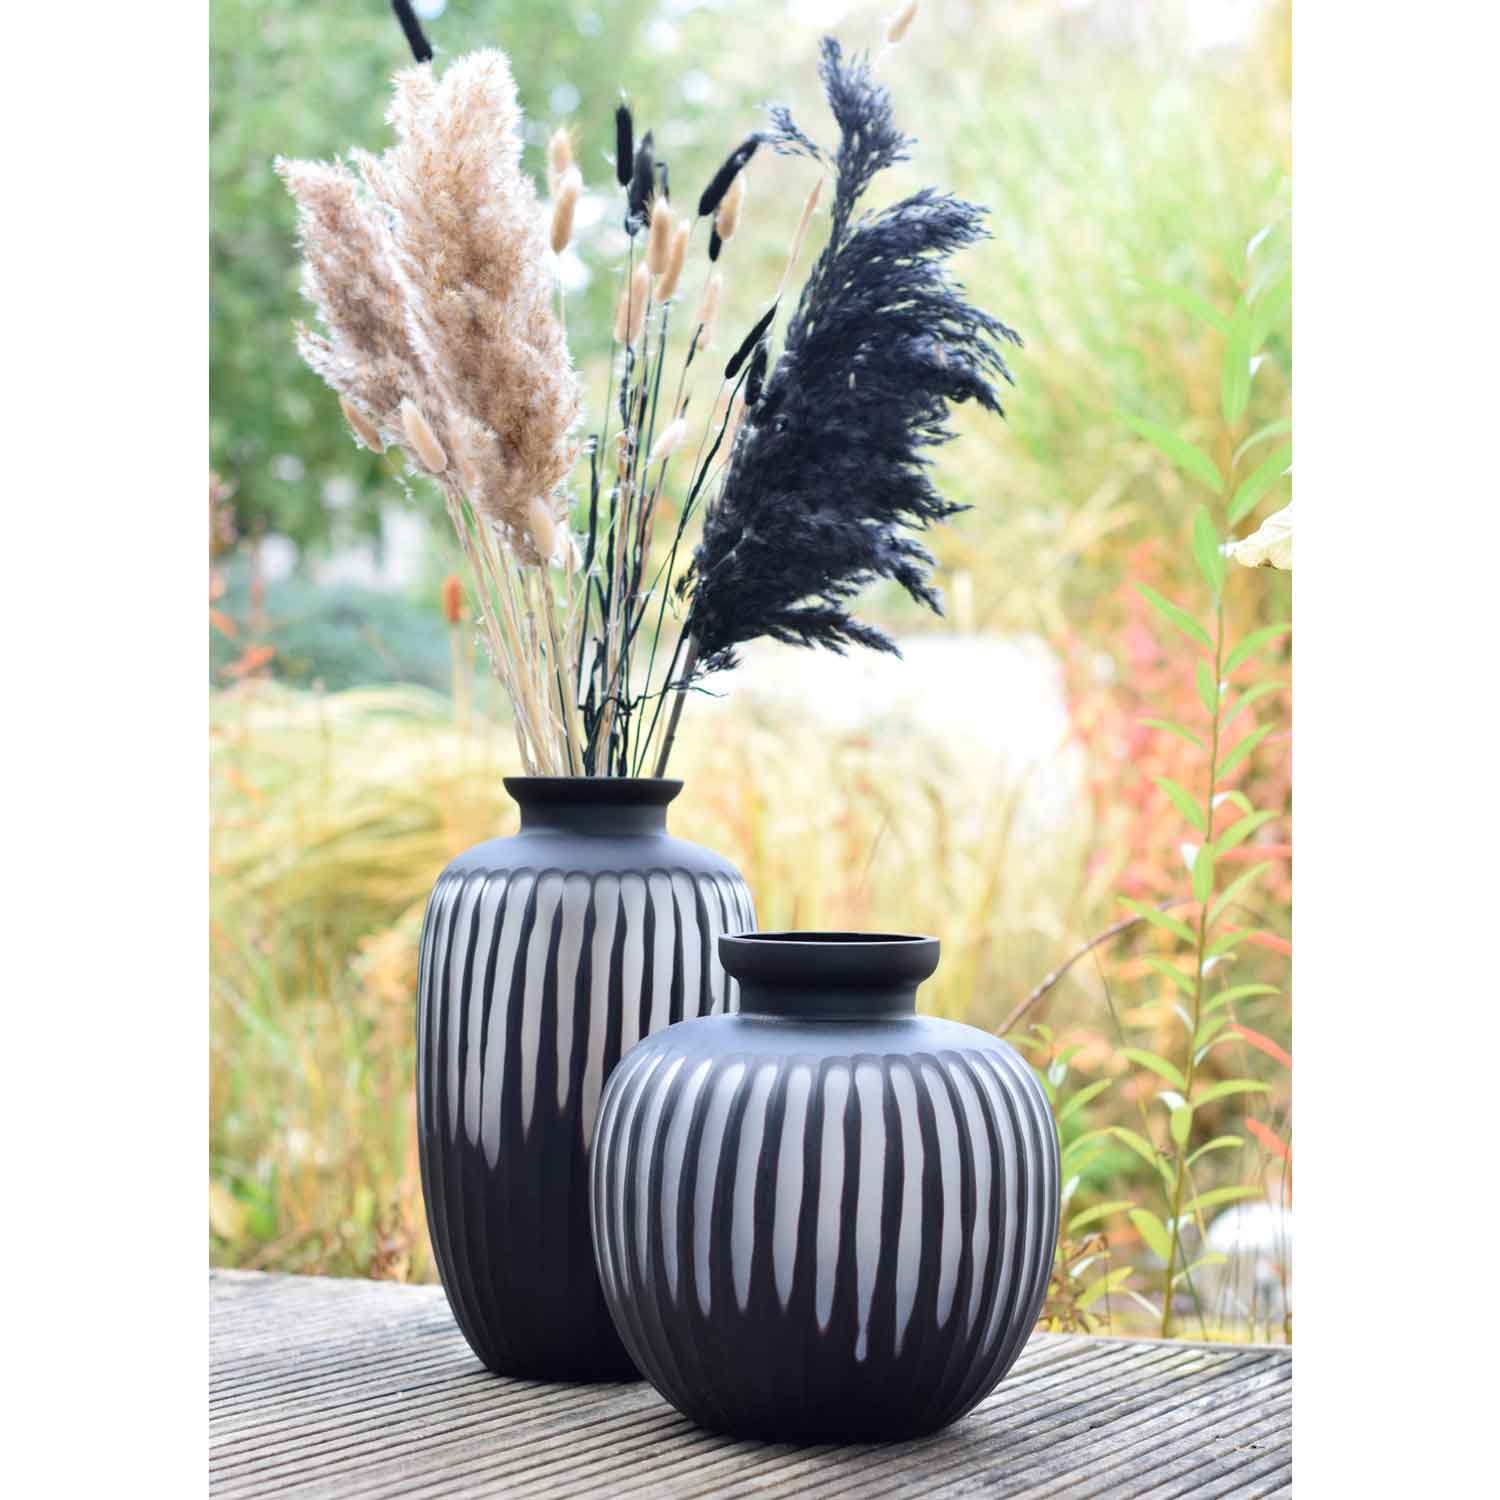 Vase Black Carved large